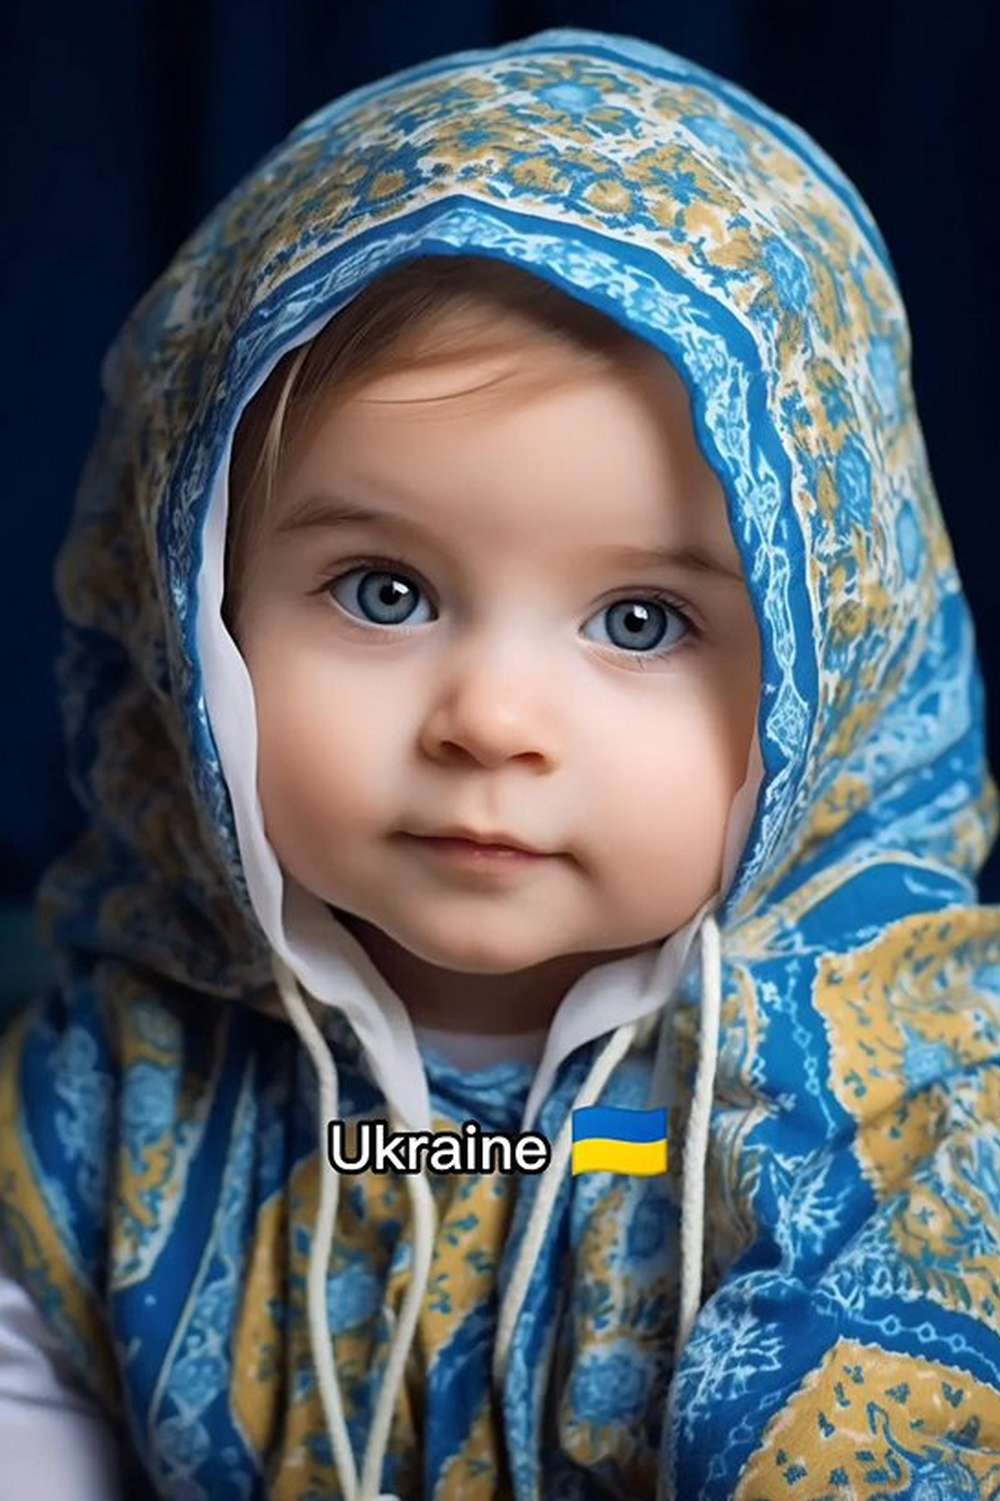 Країни малюки штучний інтелект показав, якою бачить Україну в образі дитини 15